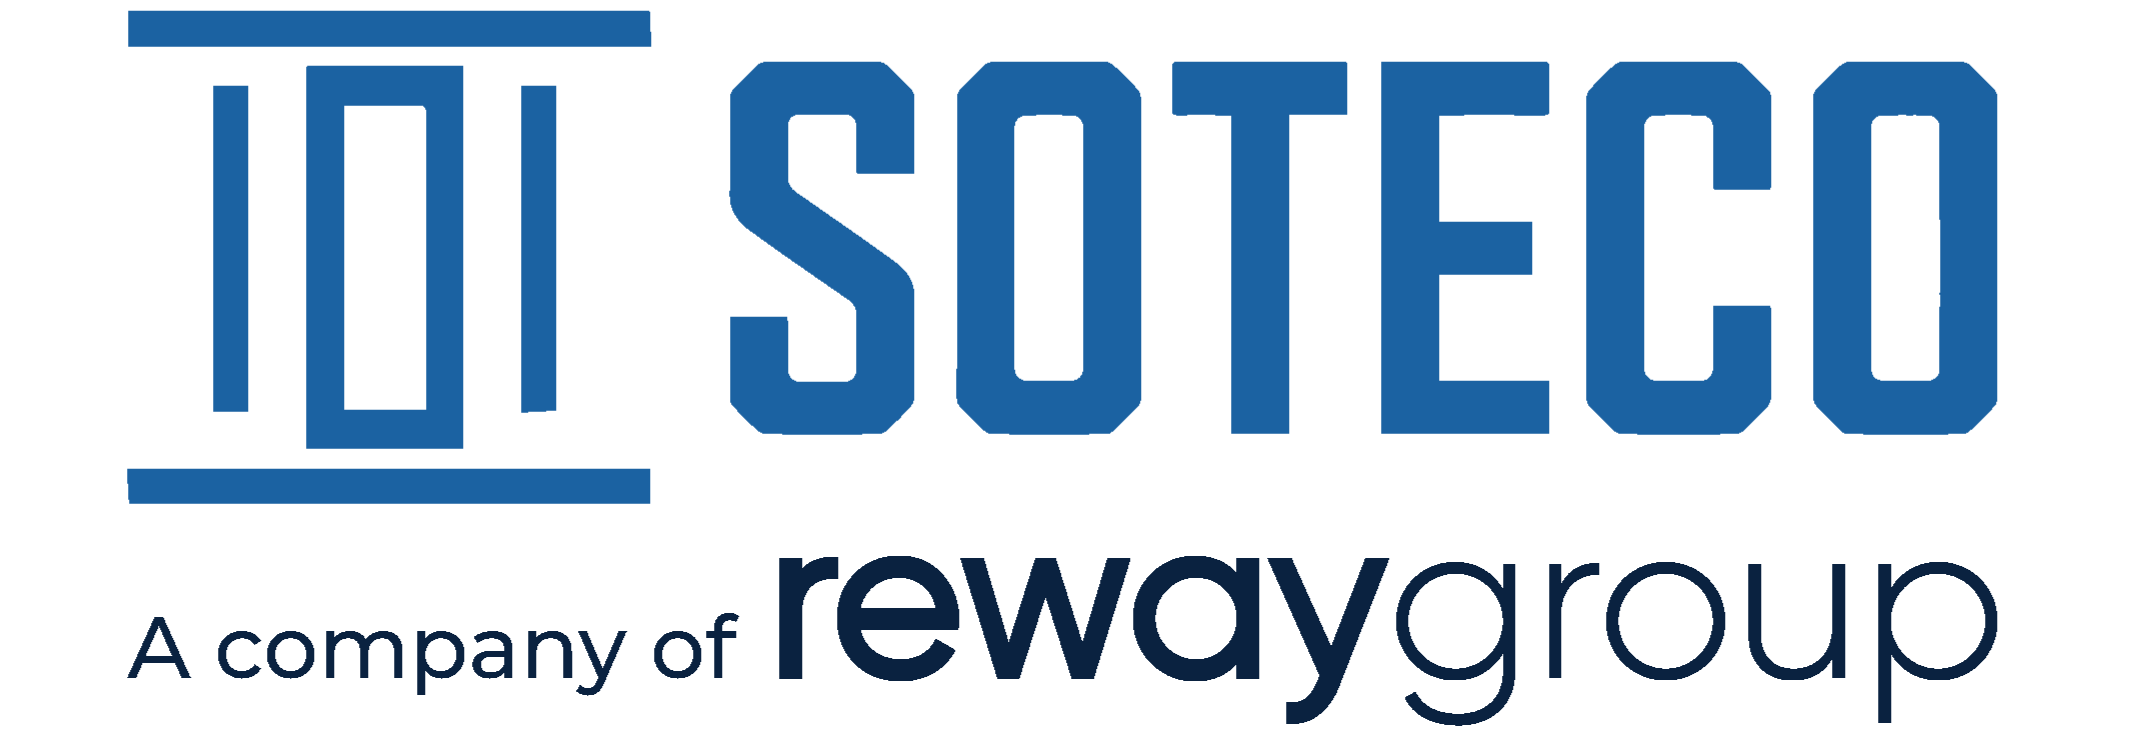 Soteco Reway Group